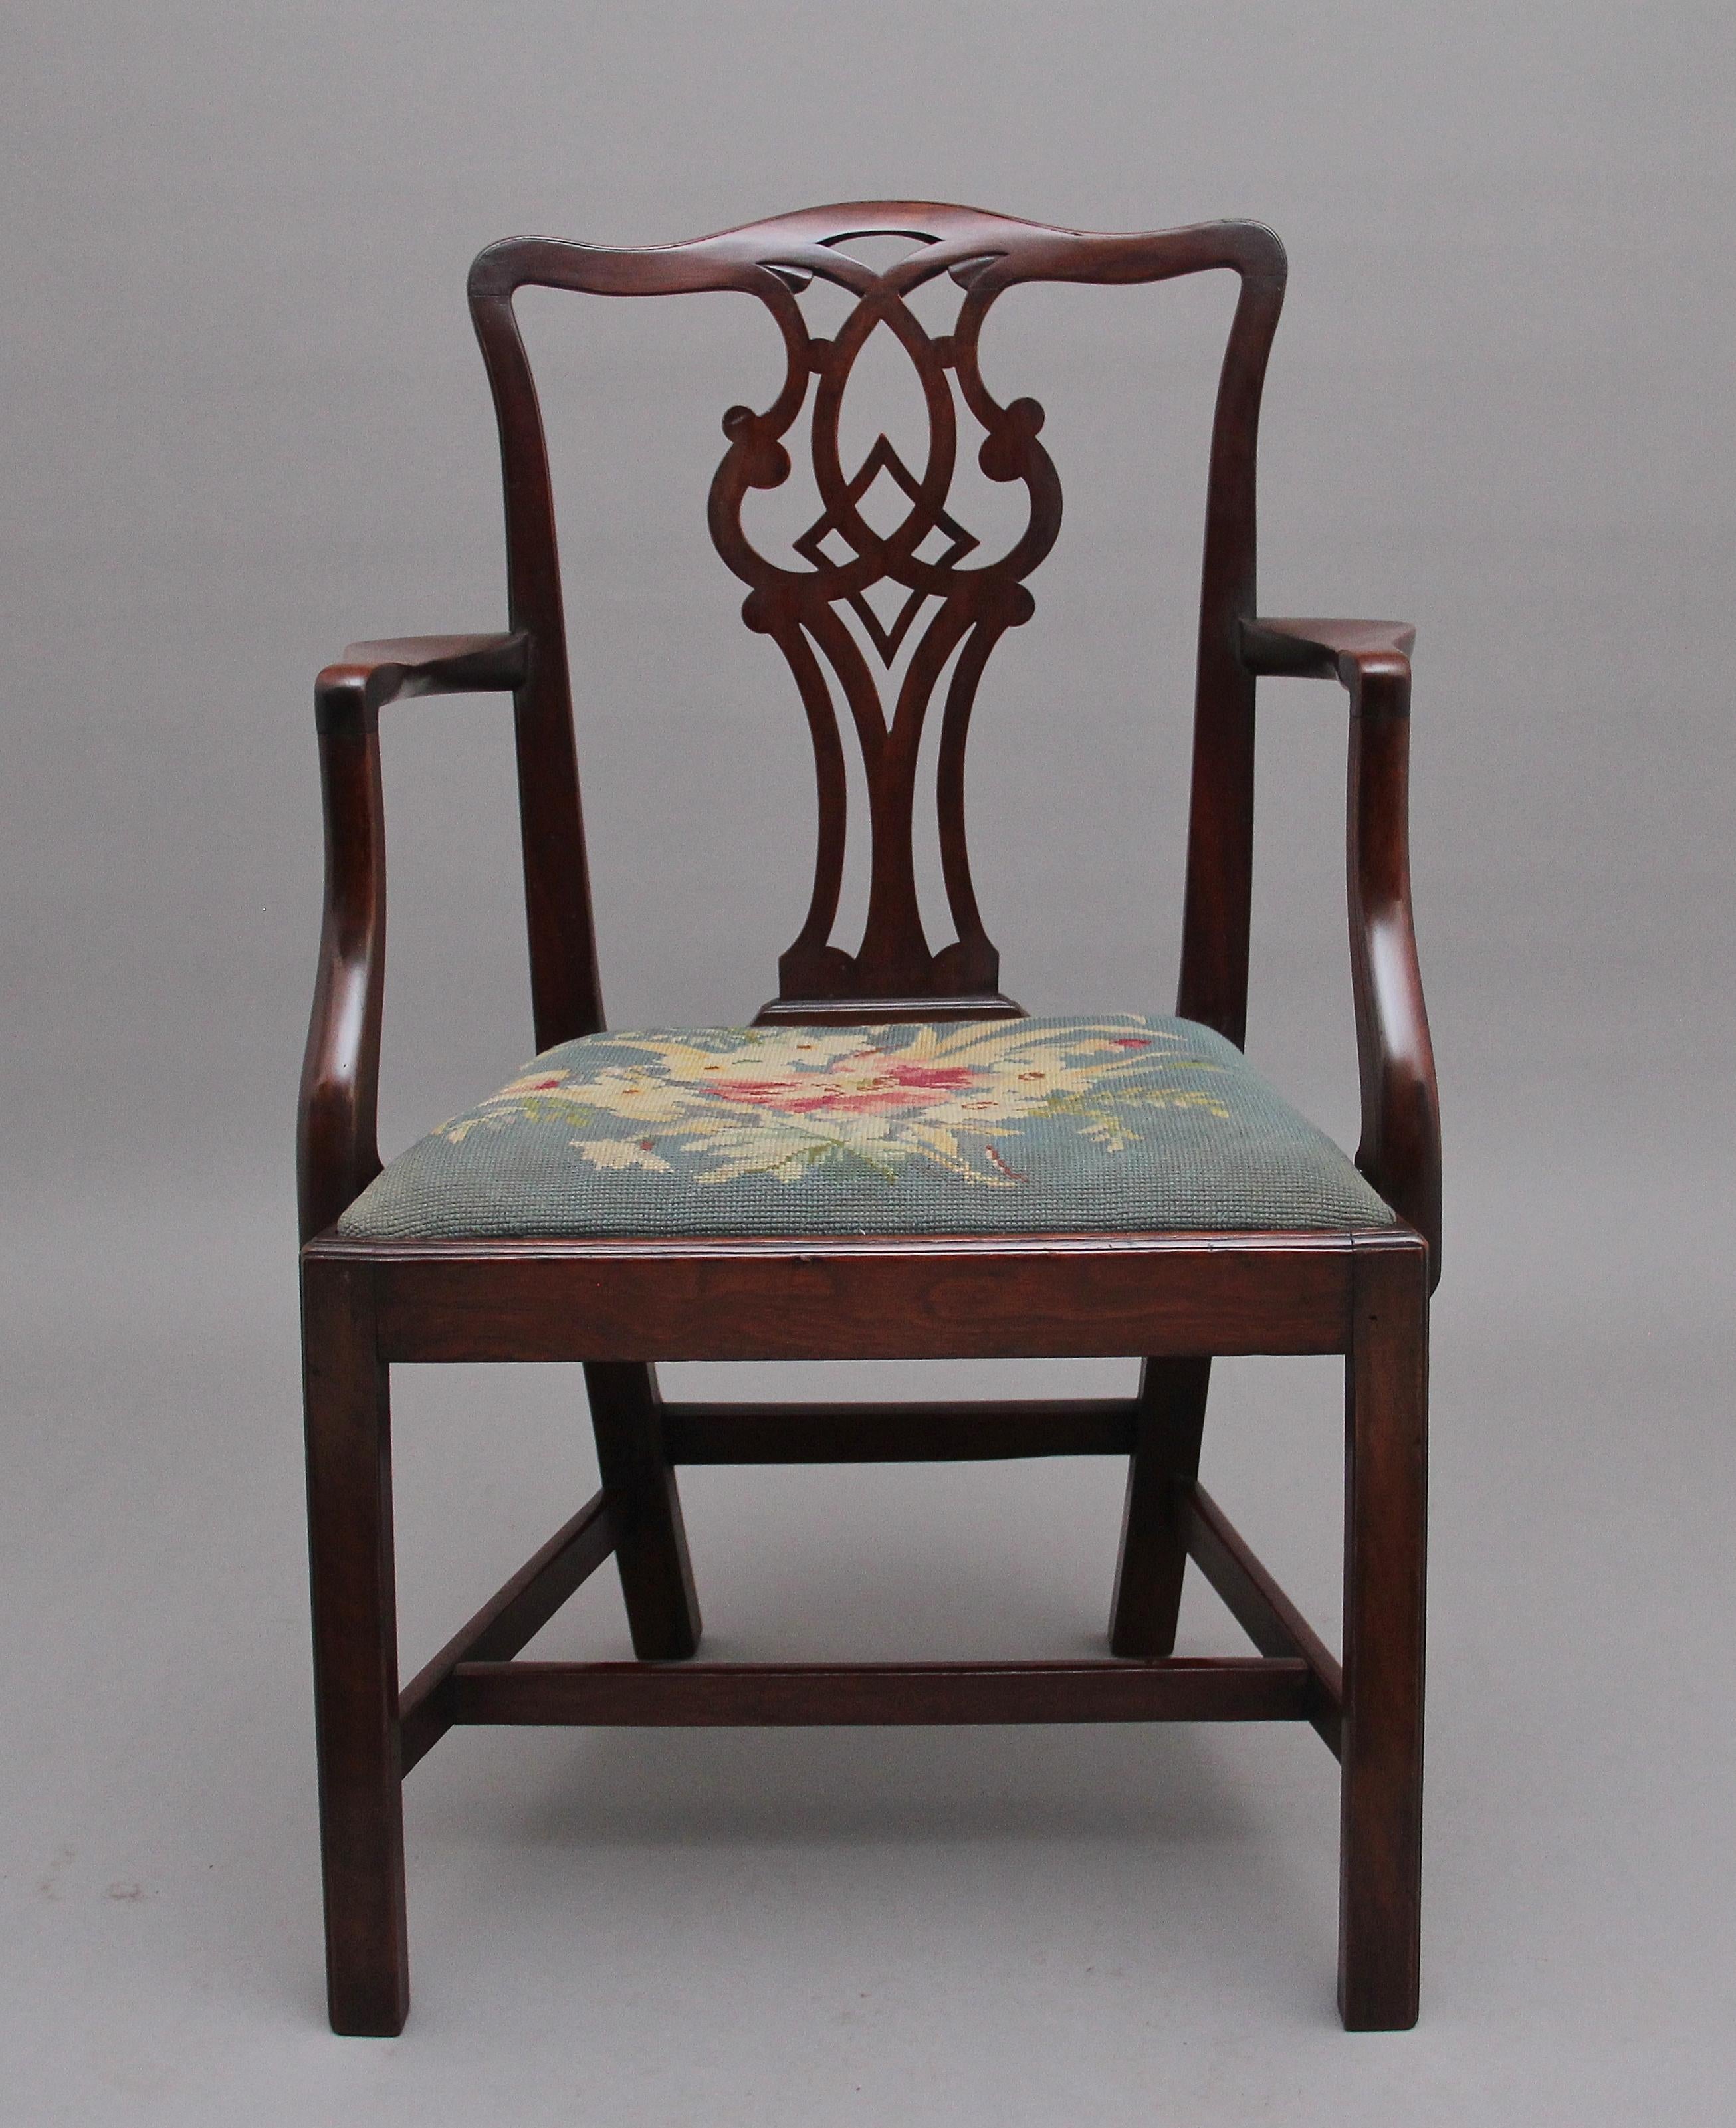 mahagoni-Sessel des 19. Jahrhunderts im Chippendale-Stil, mit durchbrochener Rückenlehne und schlanken, geschwungenen Stützen, die zu einem gepolsterten Sitz mit Nadelspitze führen, der auf quadratischen Beinen steht, die mit seitlichen, vorderen